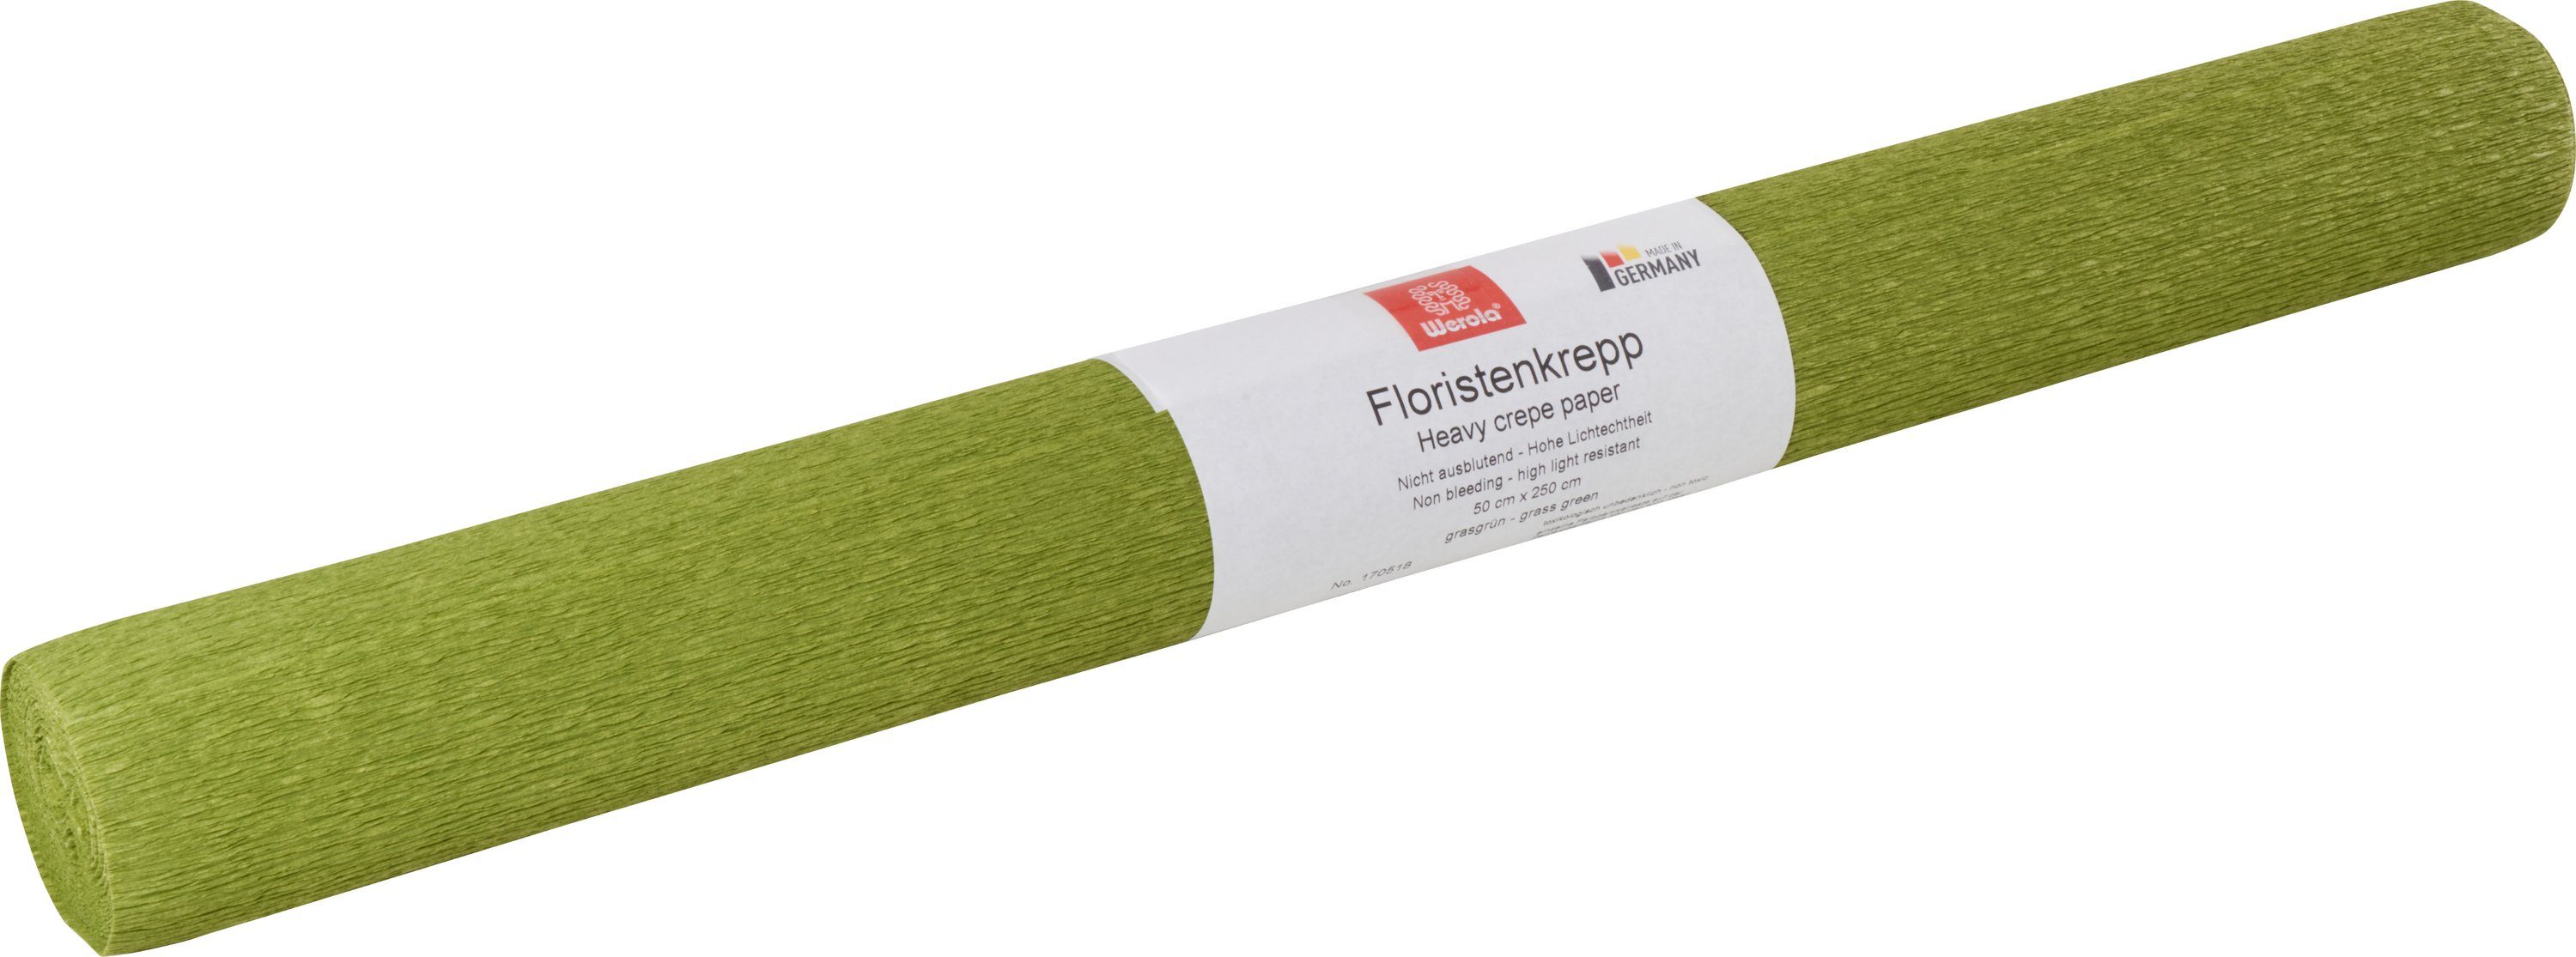 Werola Feinpapier Floristen-Kreppapier, 250 cm x 50 cm, farbfest Grasgrün